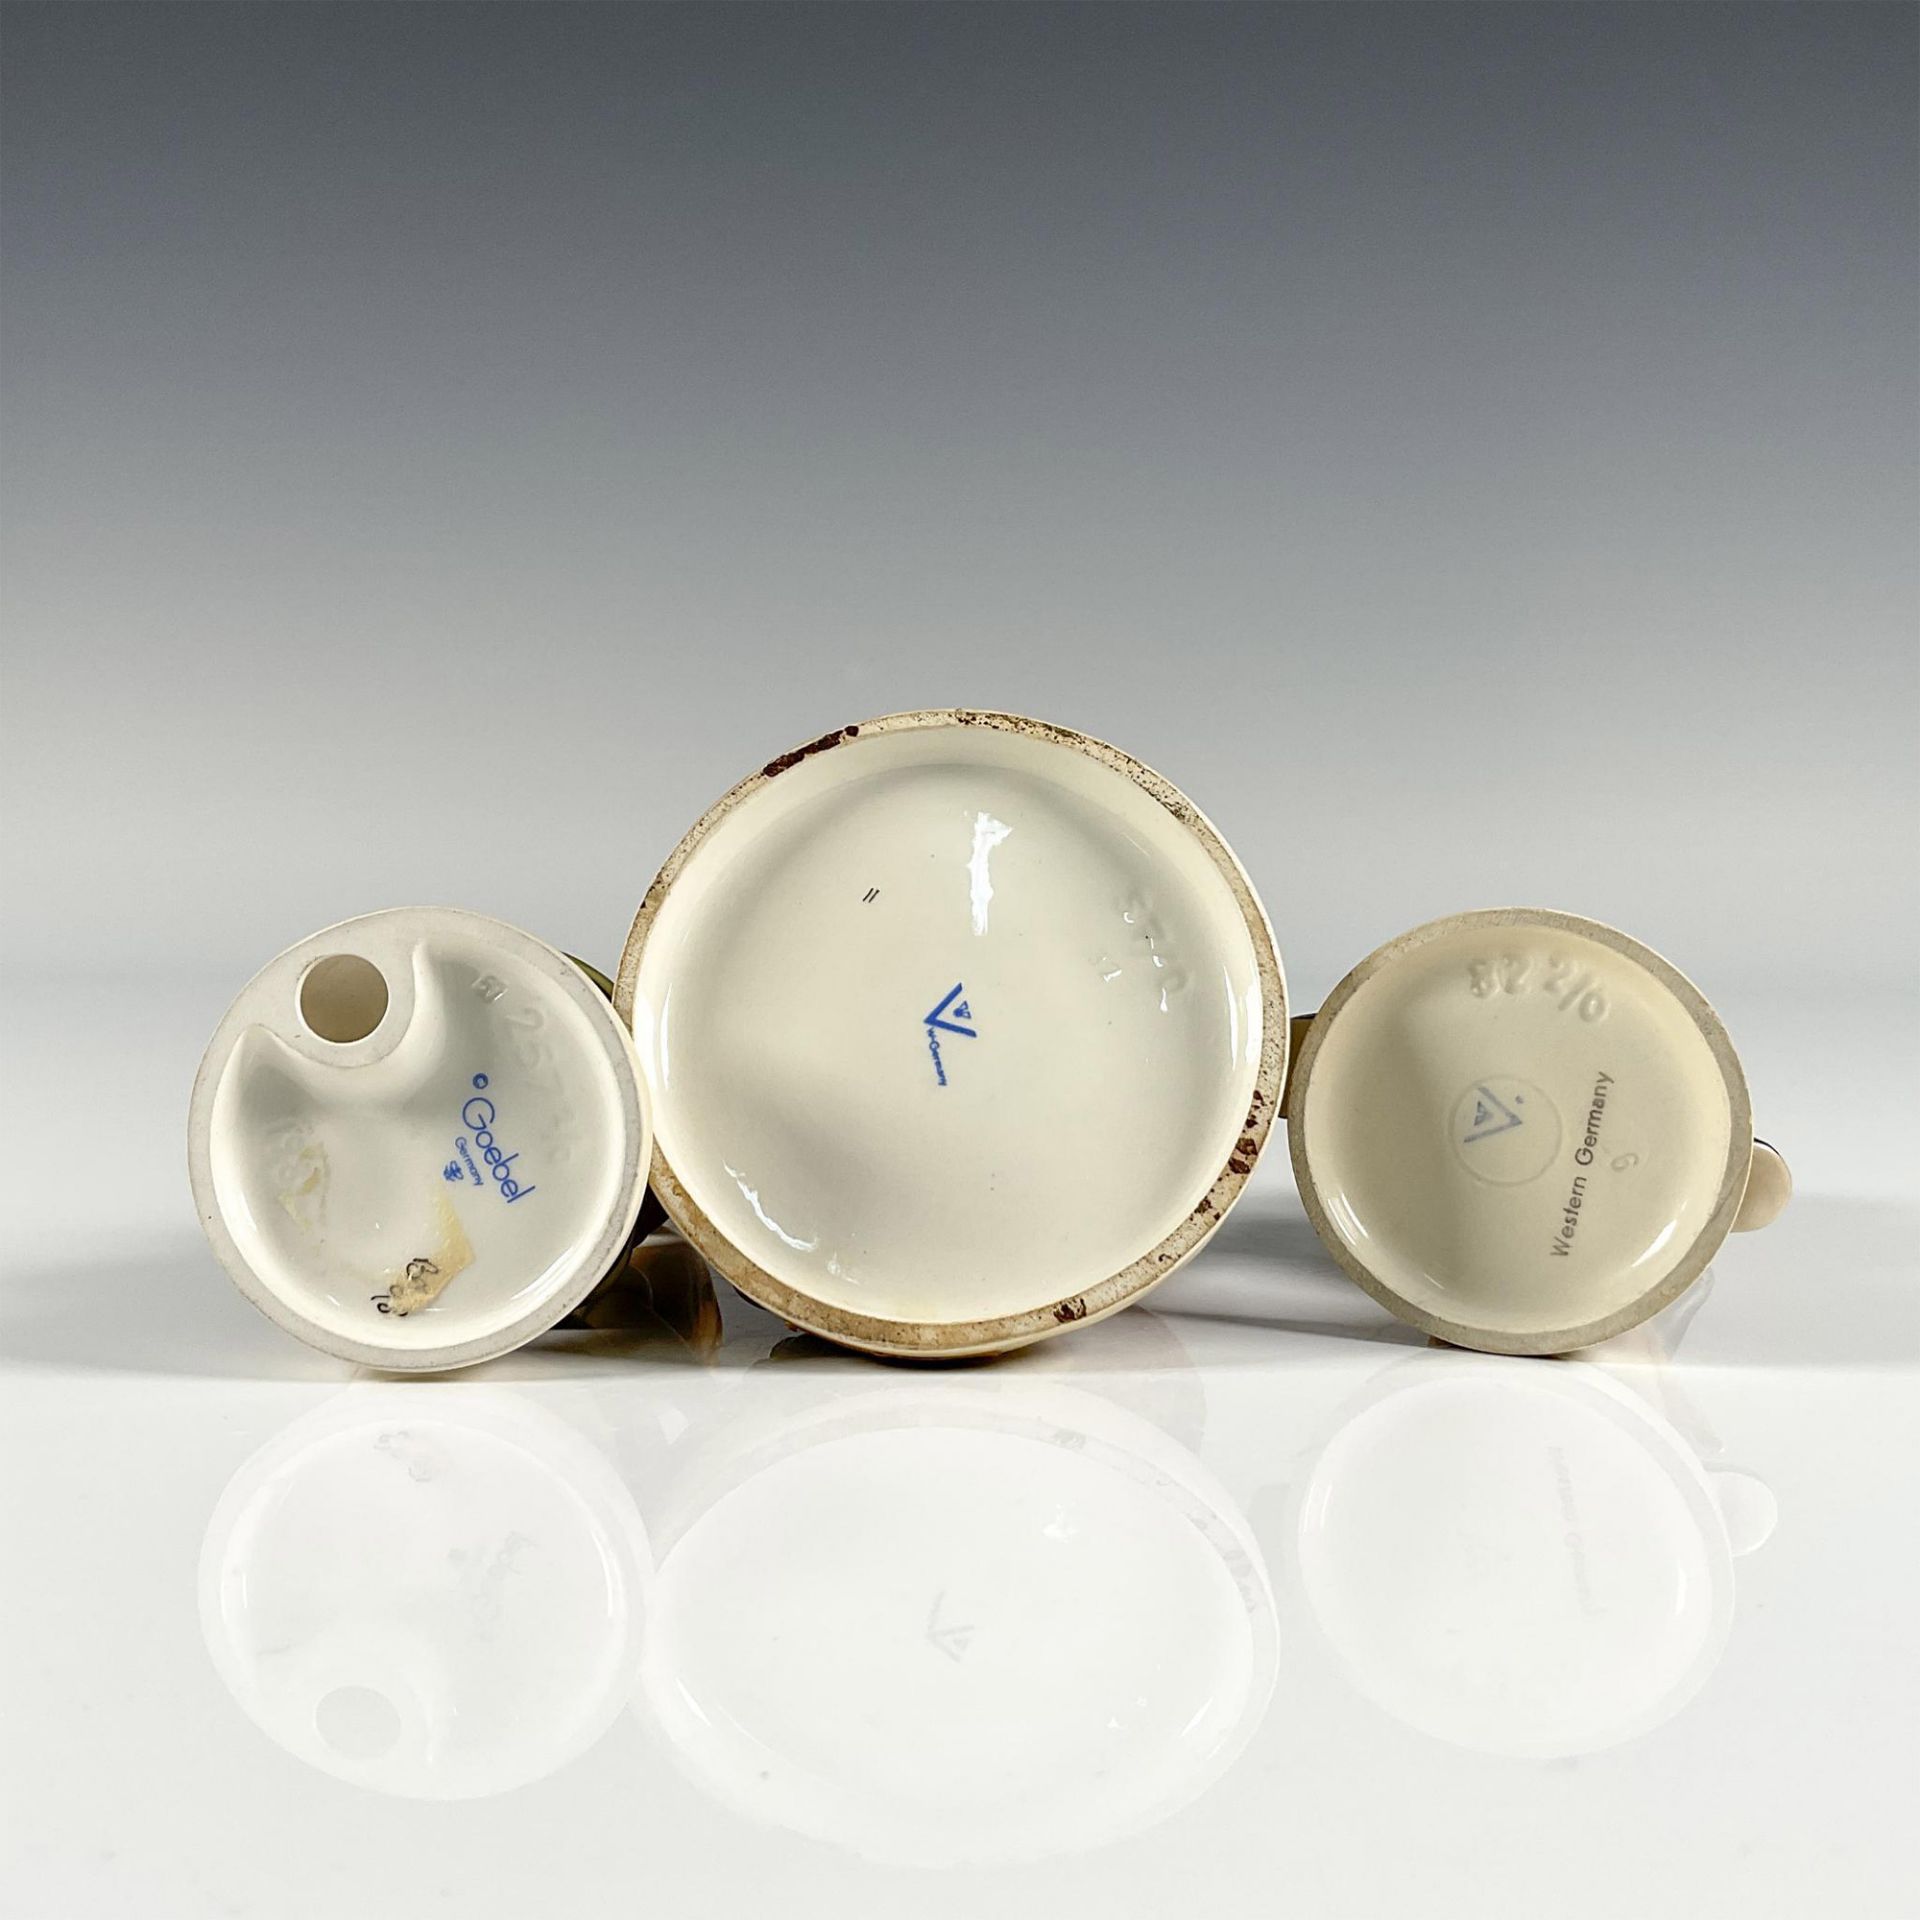 3pc Goebel Hummel Porcelain Figurines - Image 3 of 3